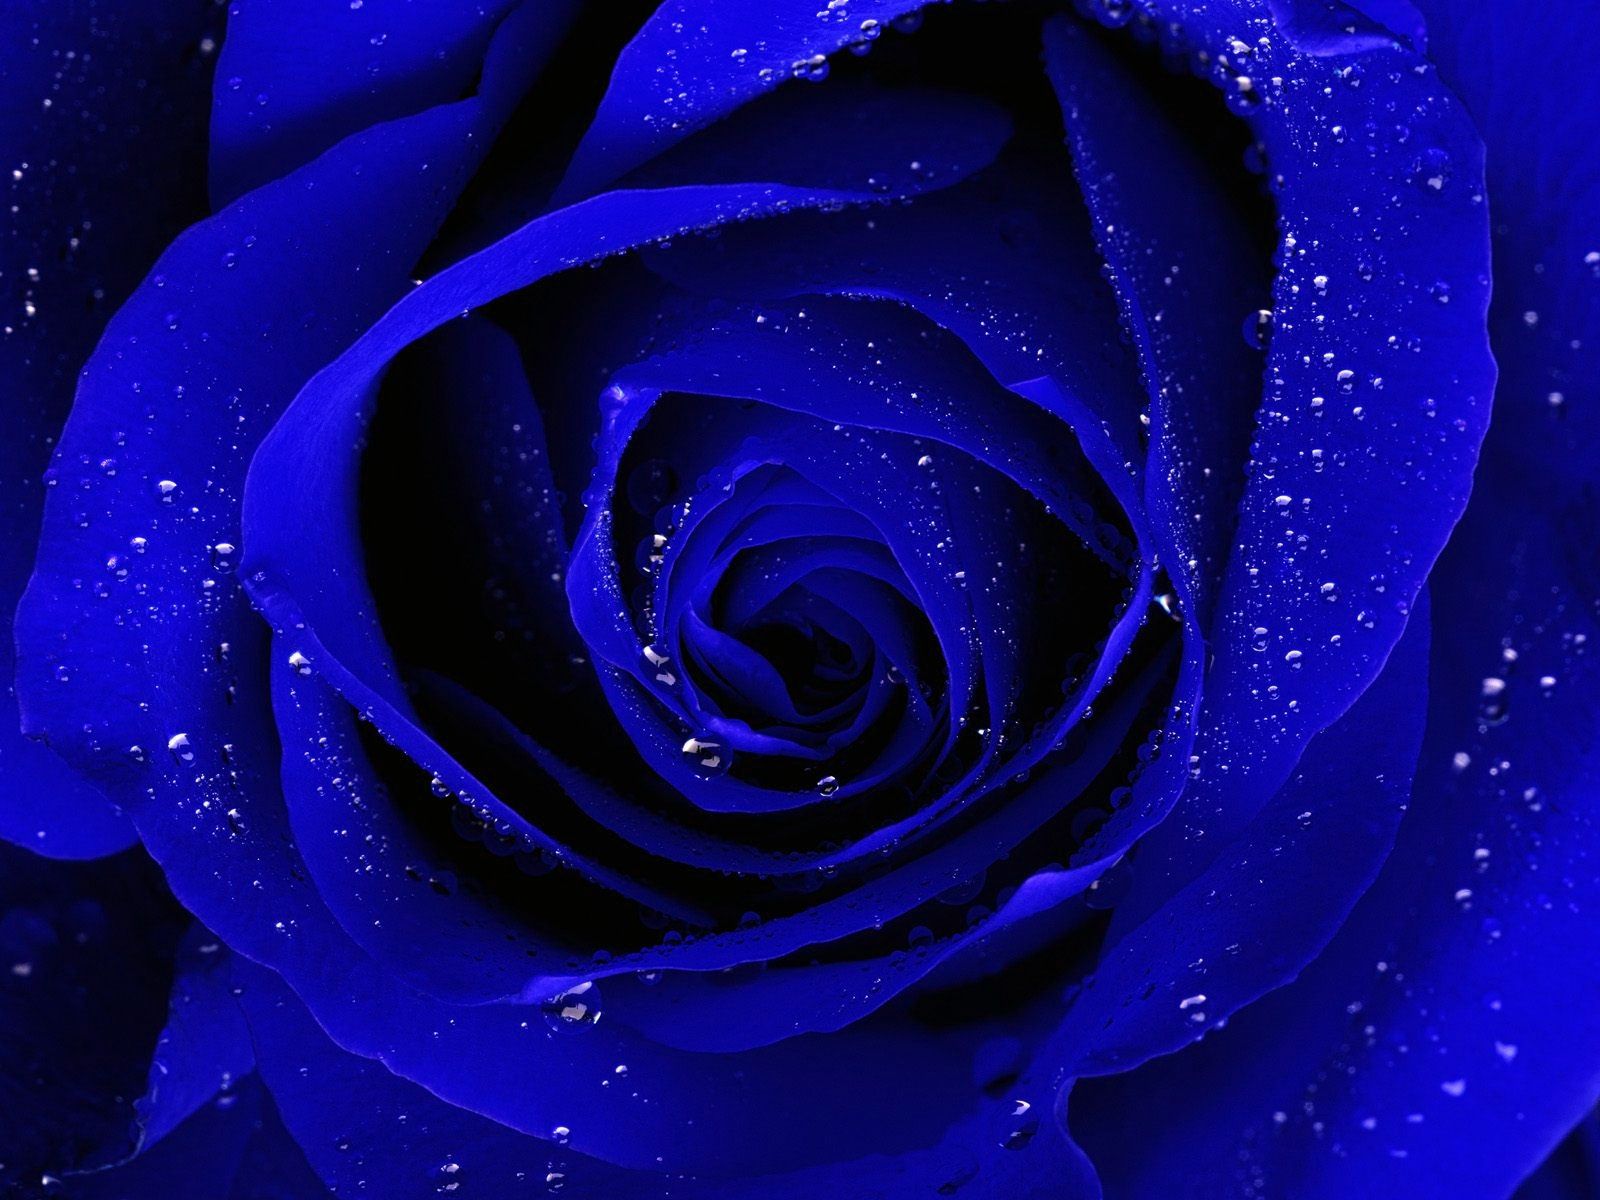 Blue Rose Desktop Wallpaper, Wide High Quality Blue Rose Desktop